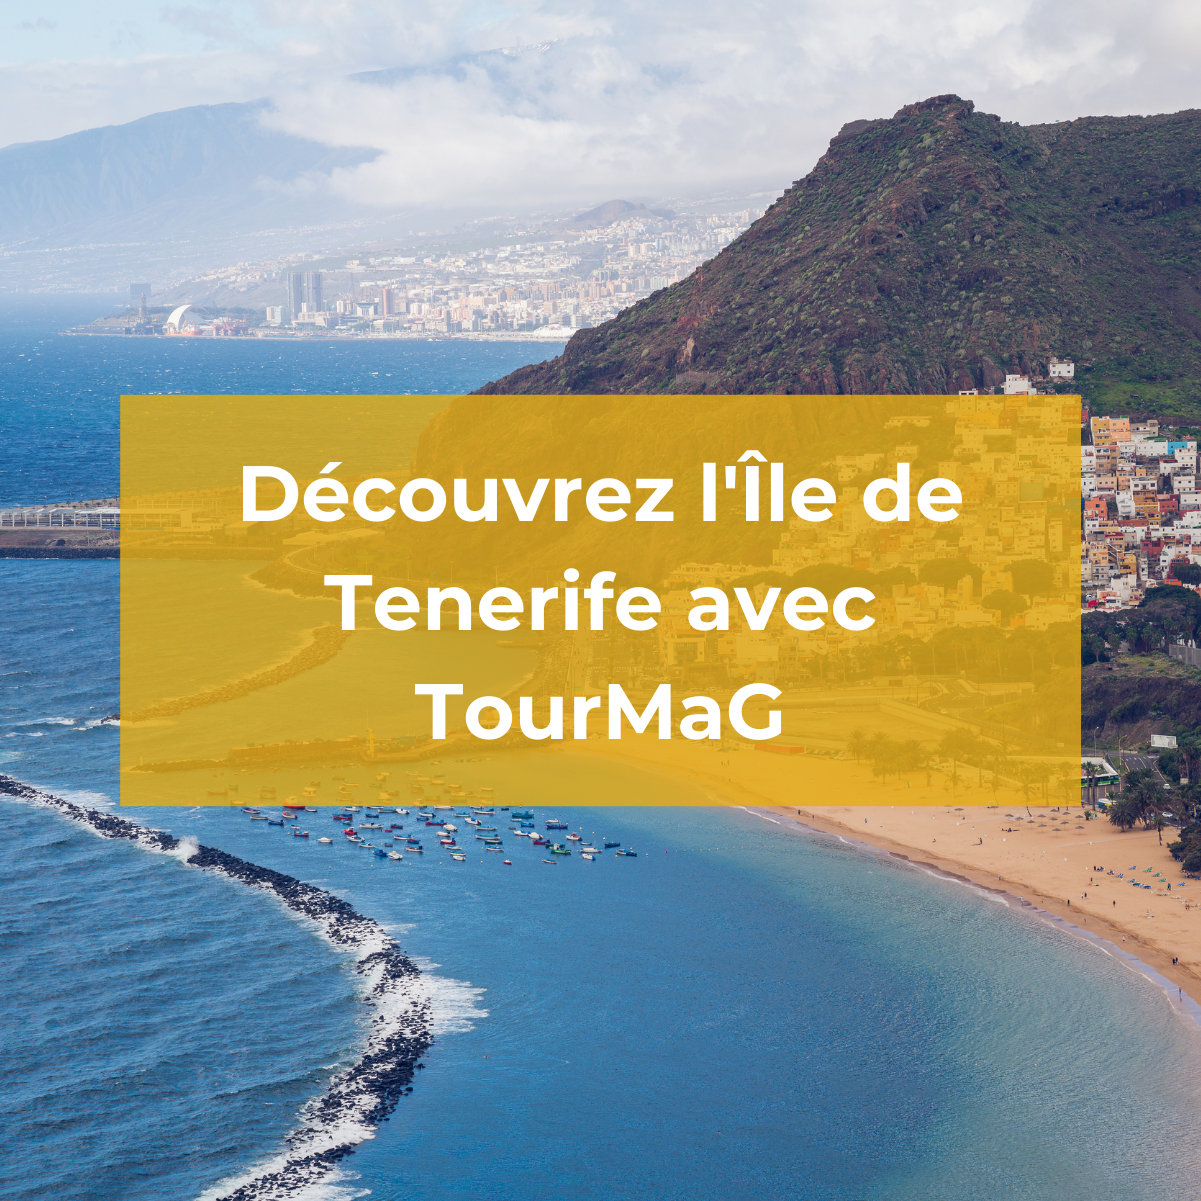 Tenerife : une île aux nombreux attraits